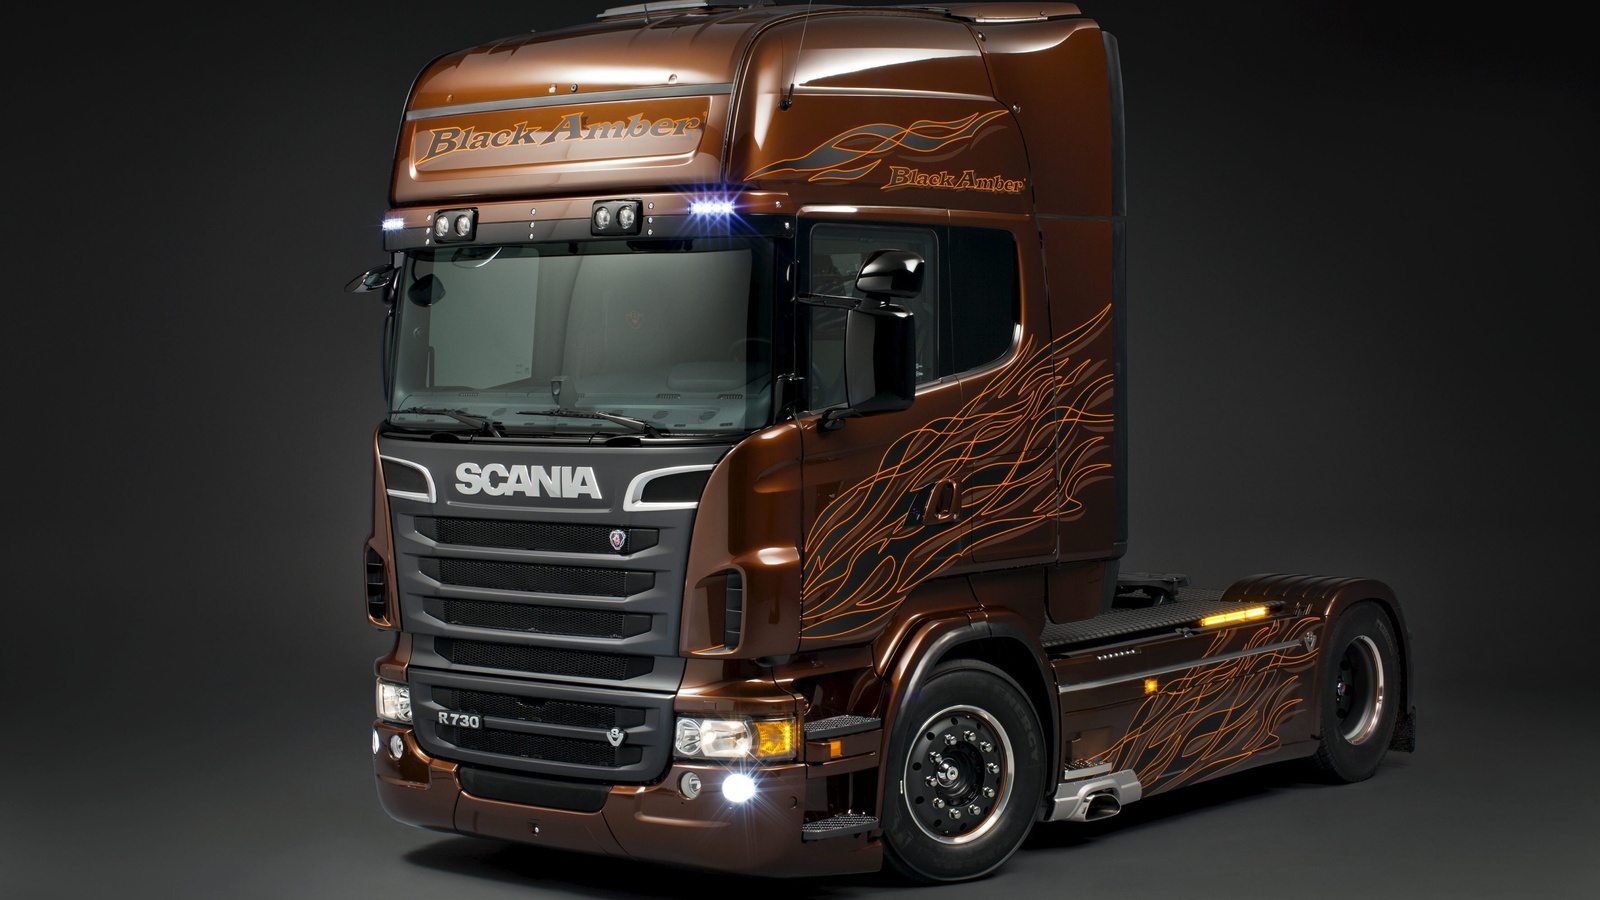 r730, black amber, , Scania, scania trucks, 730, , 730 ..